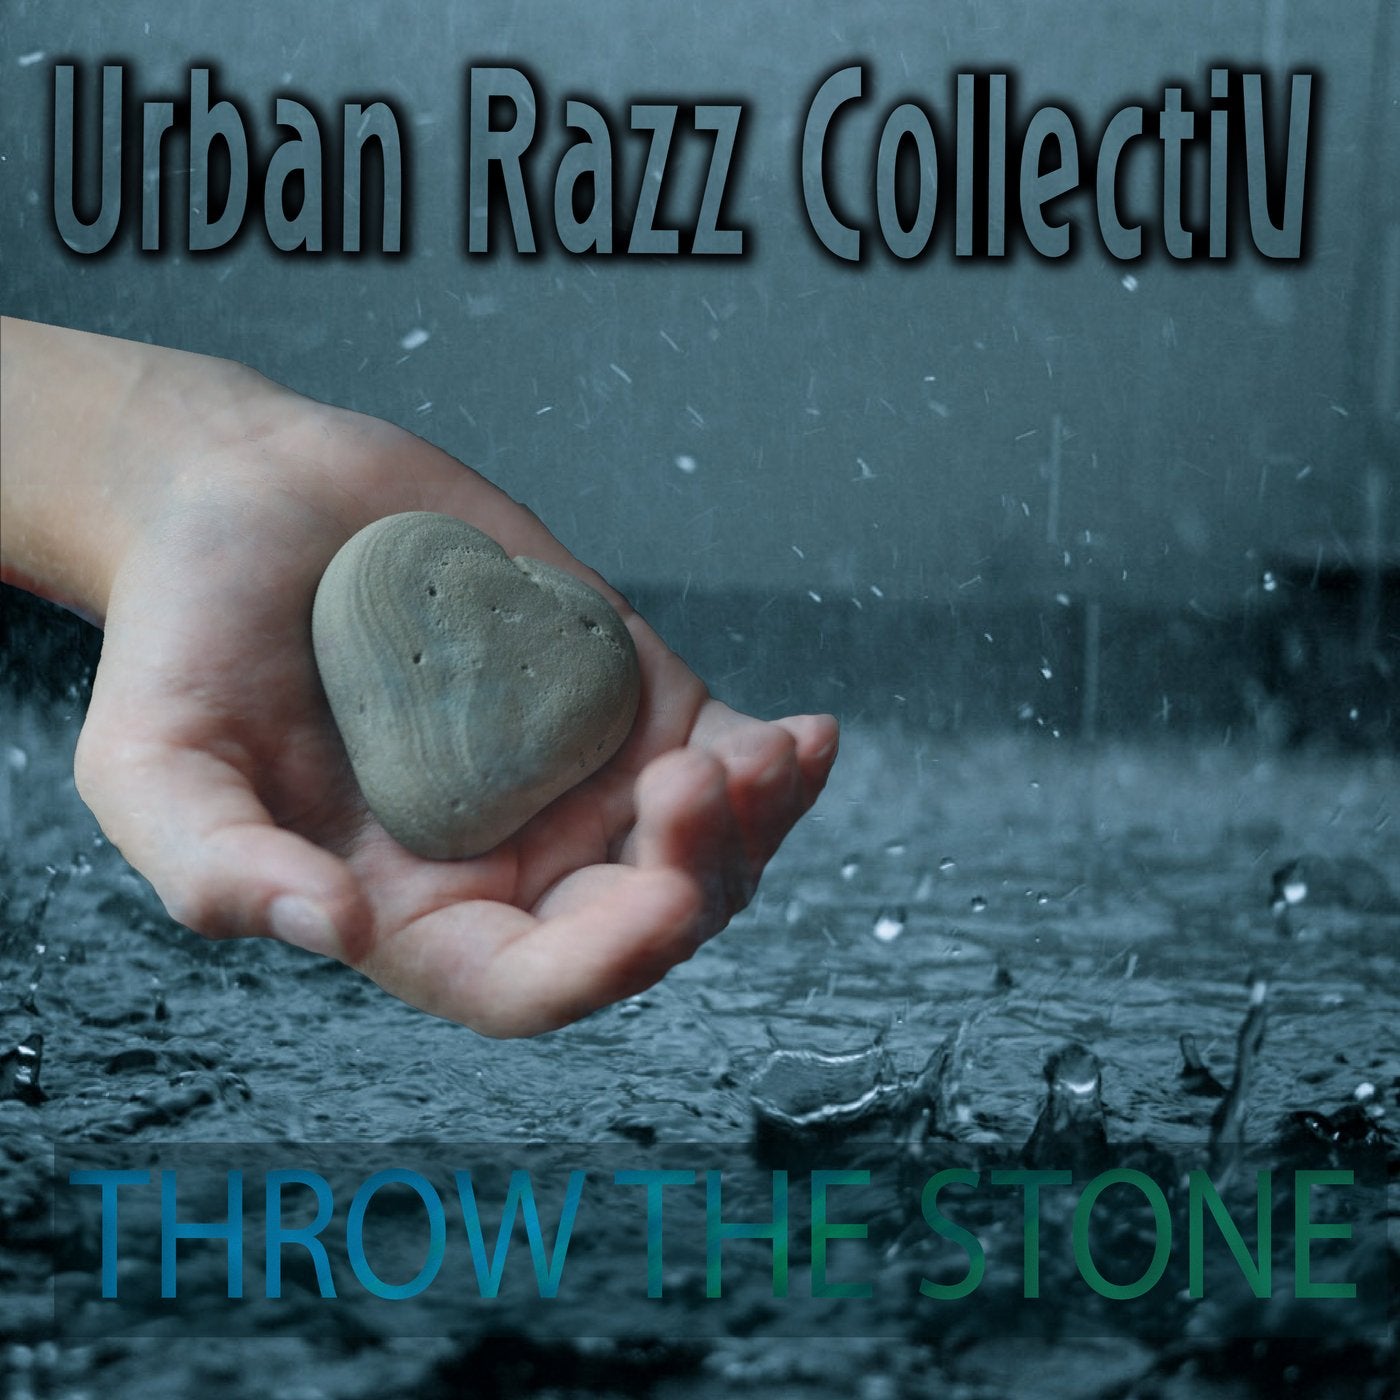 Throw the Stone